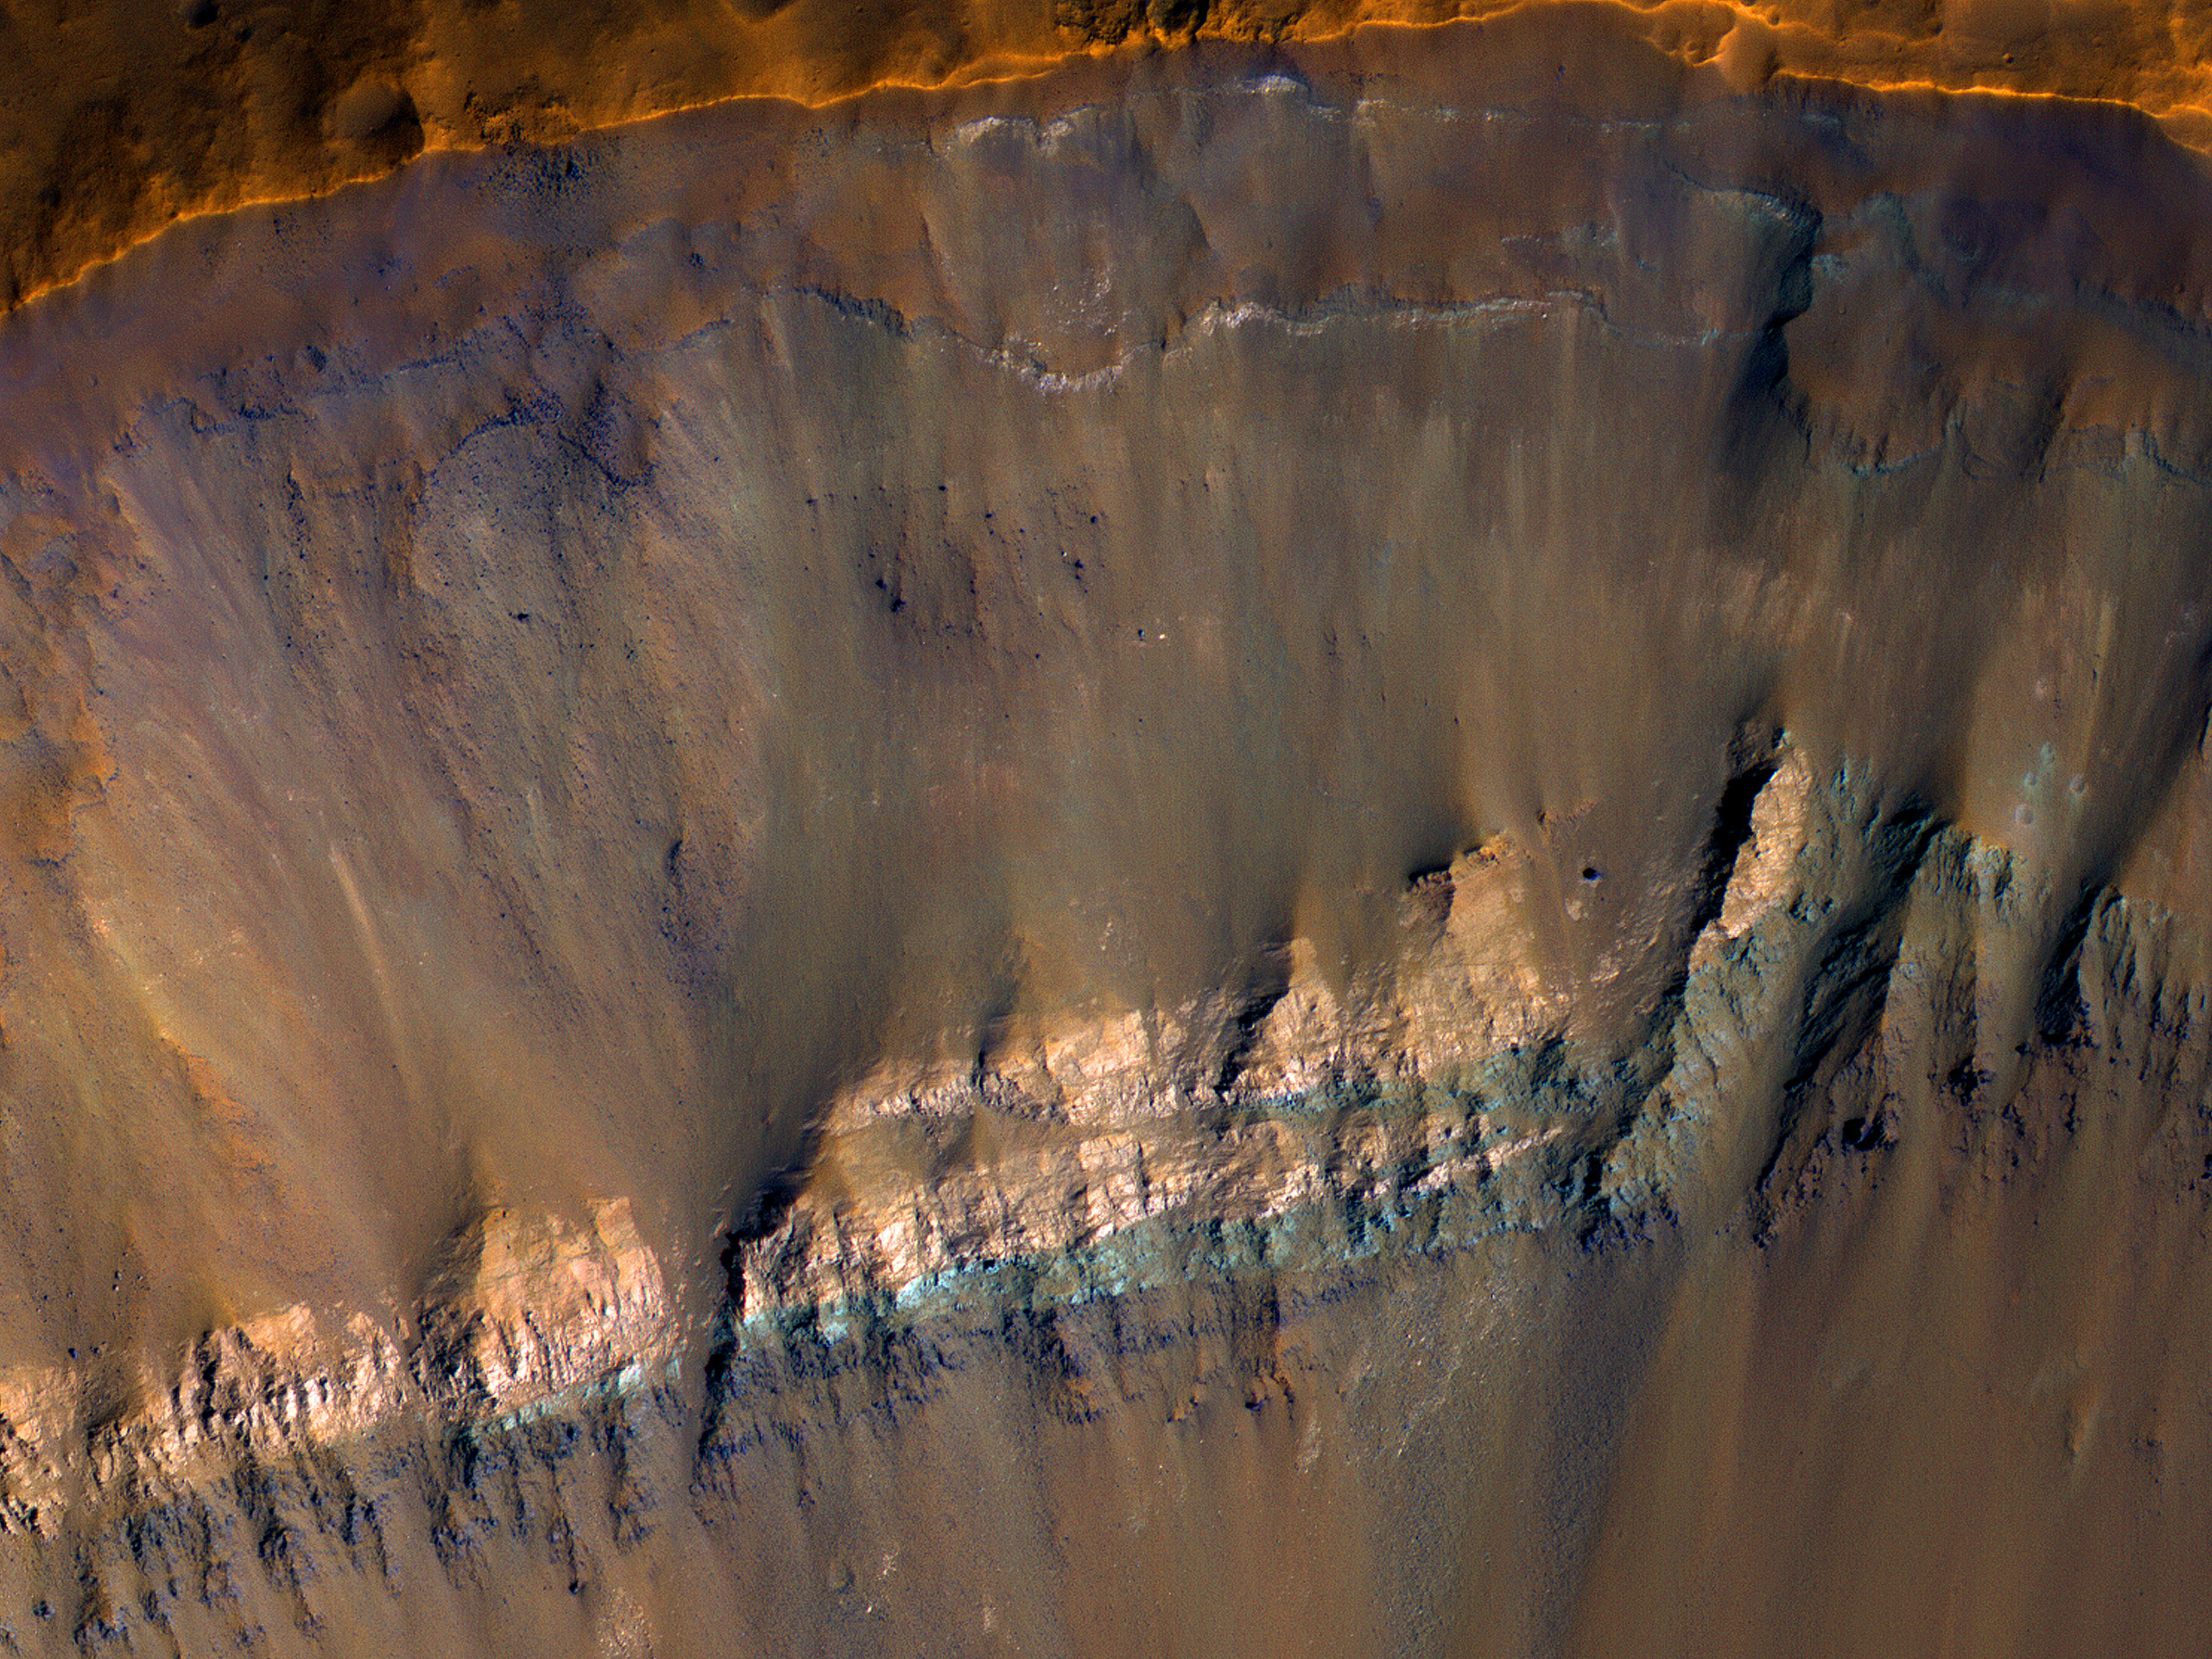 Çarpma kraterinin duvarlarında ortaya çıkmış renkli katmanlar